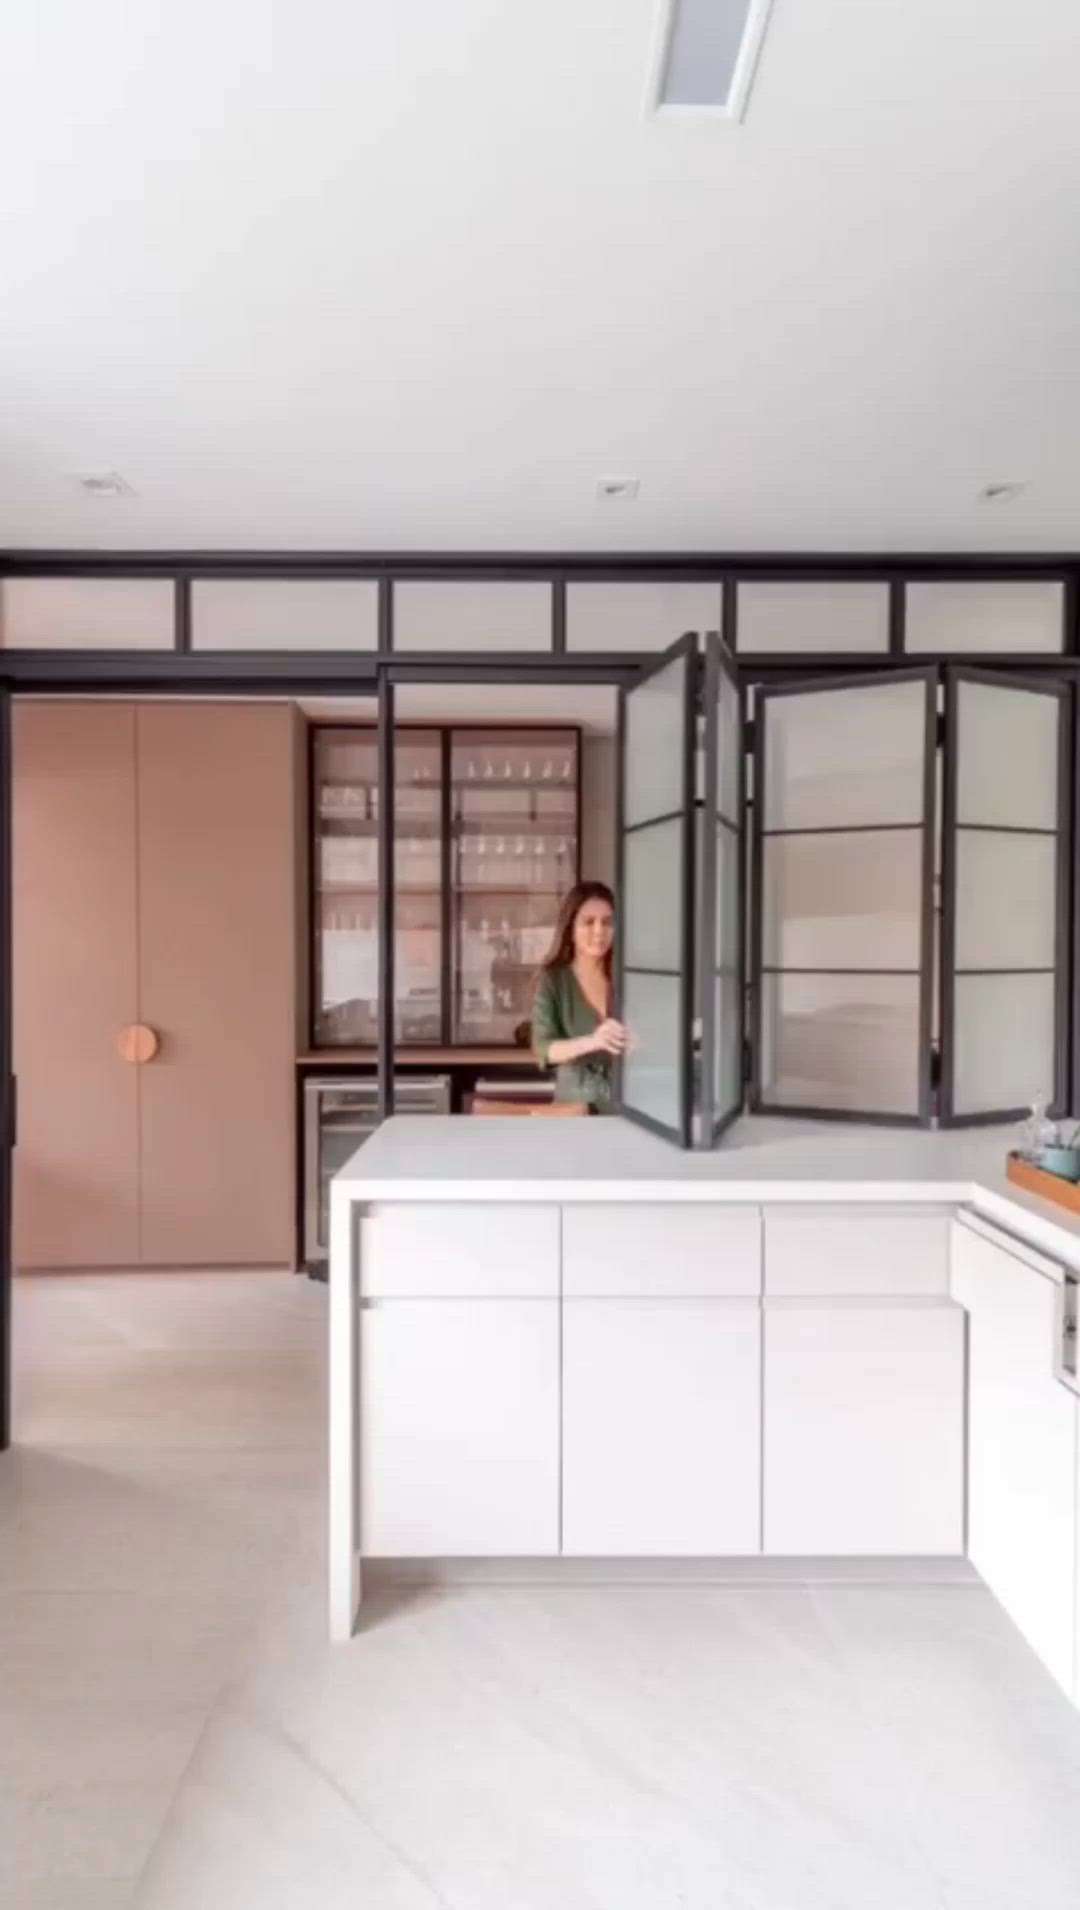 #creatorsofkolo #doors #dos #dont #buy #home #best #slidingdoors #foldingdoors #openkitchen #privacy #glassdoors #alumiumdoor #stylishdoors
let's see some of the most beautiful door ideas for your open kitchen #trending #viralkolo